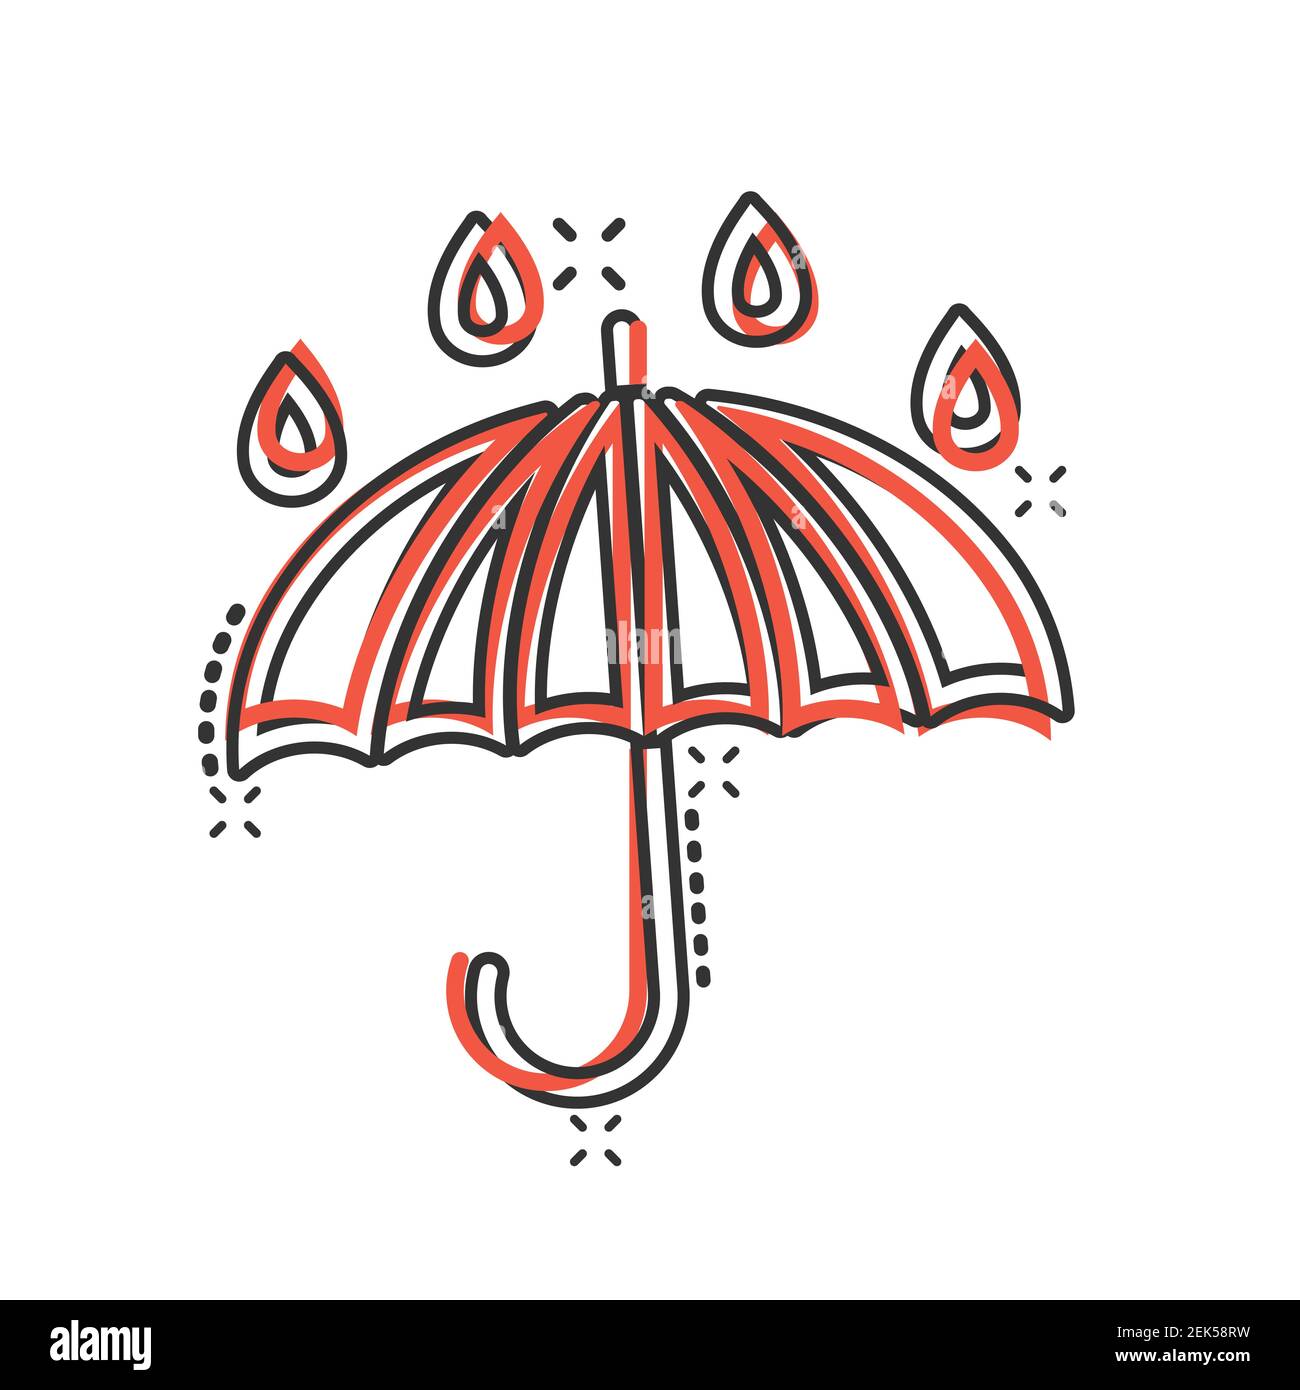 Regenschirm-Ikone im Comic-Stil. Parasol Cartoon Vektor-Illustration auf  weißem isolierten Hintergrund. Geschäftskonzept mit Baldachin-Spritzeffekt  Stock-Vektorgrafik - Alamy